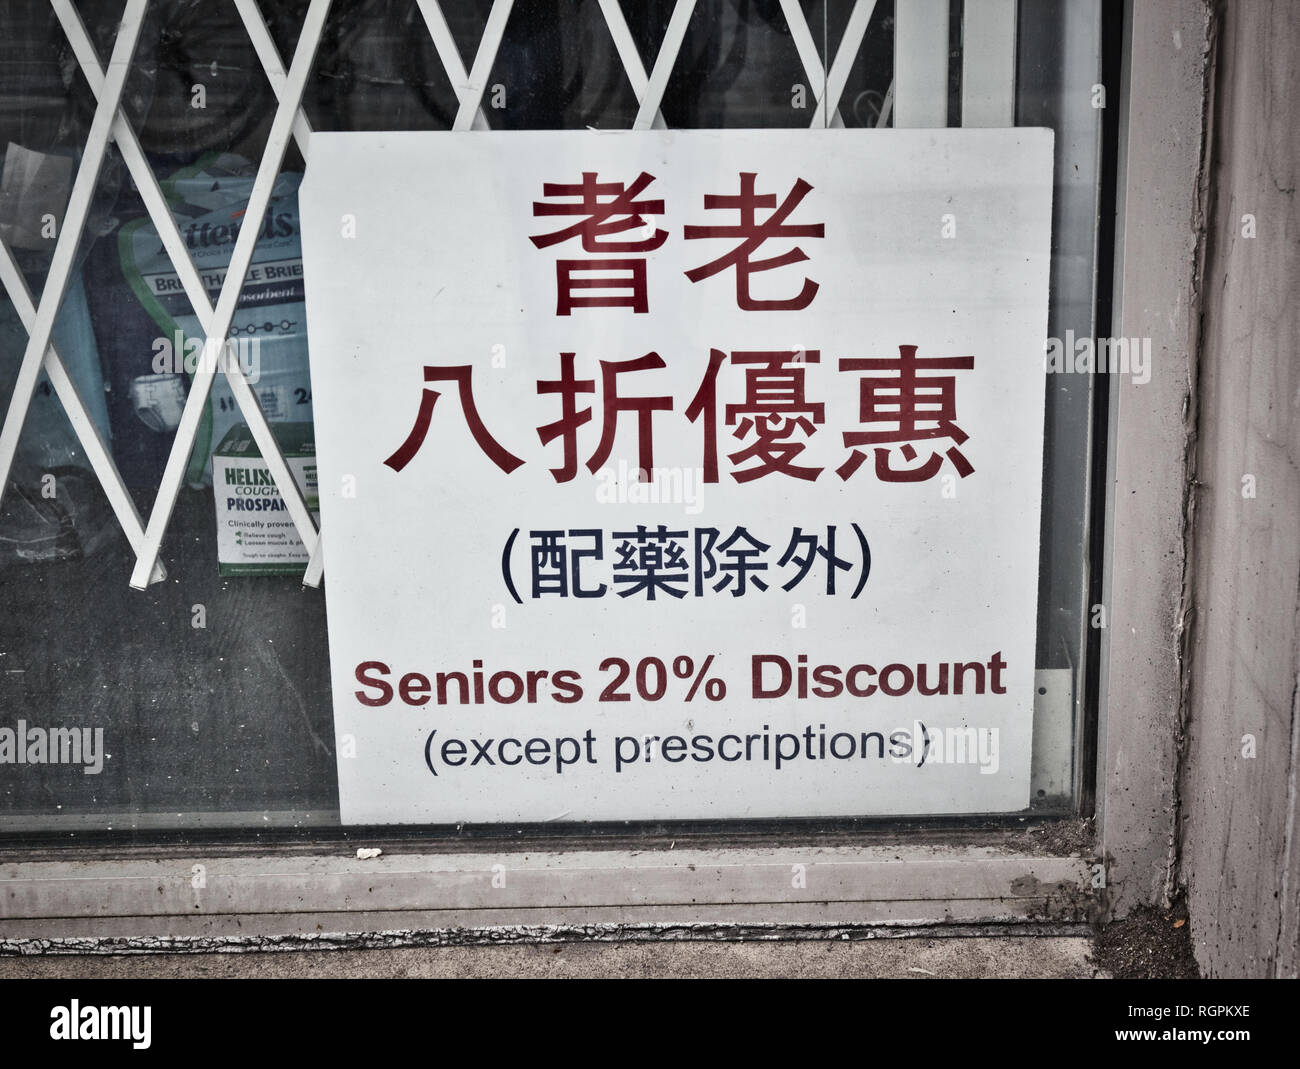 Seniors 20% discount sign in Chinese drugstore pharmacy, Chinatown, Toronto, Ontario, Canada Stock Photo